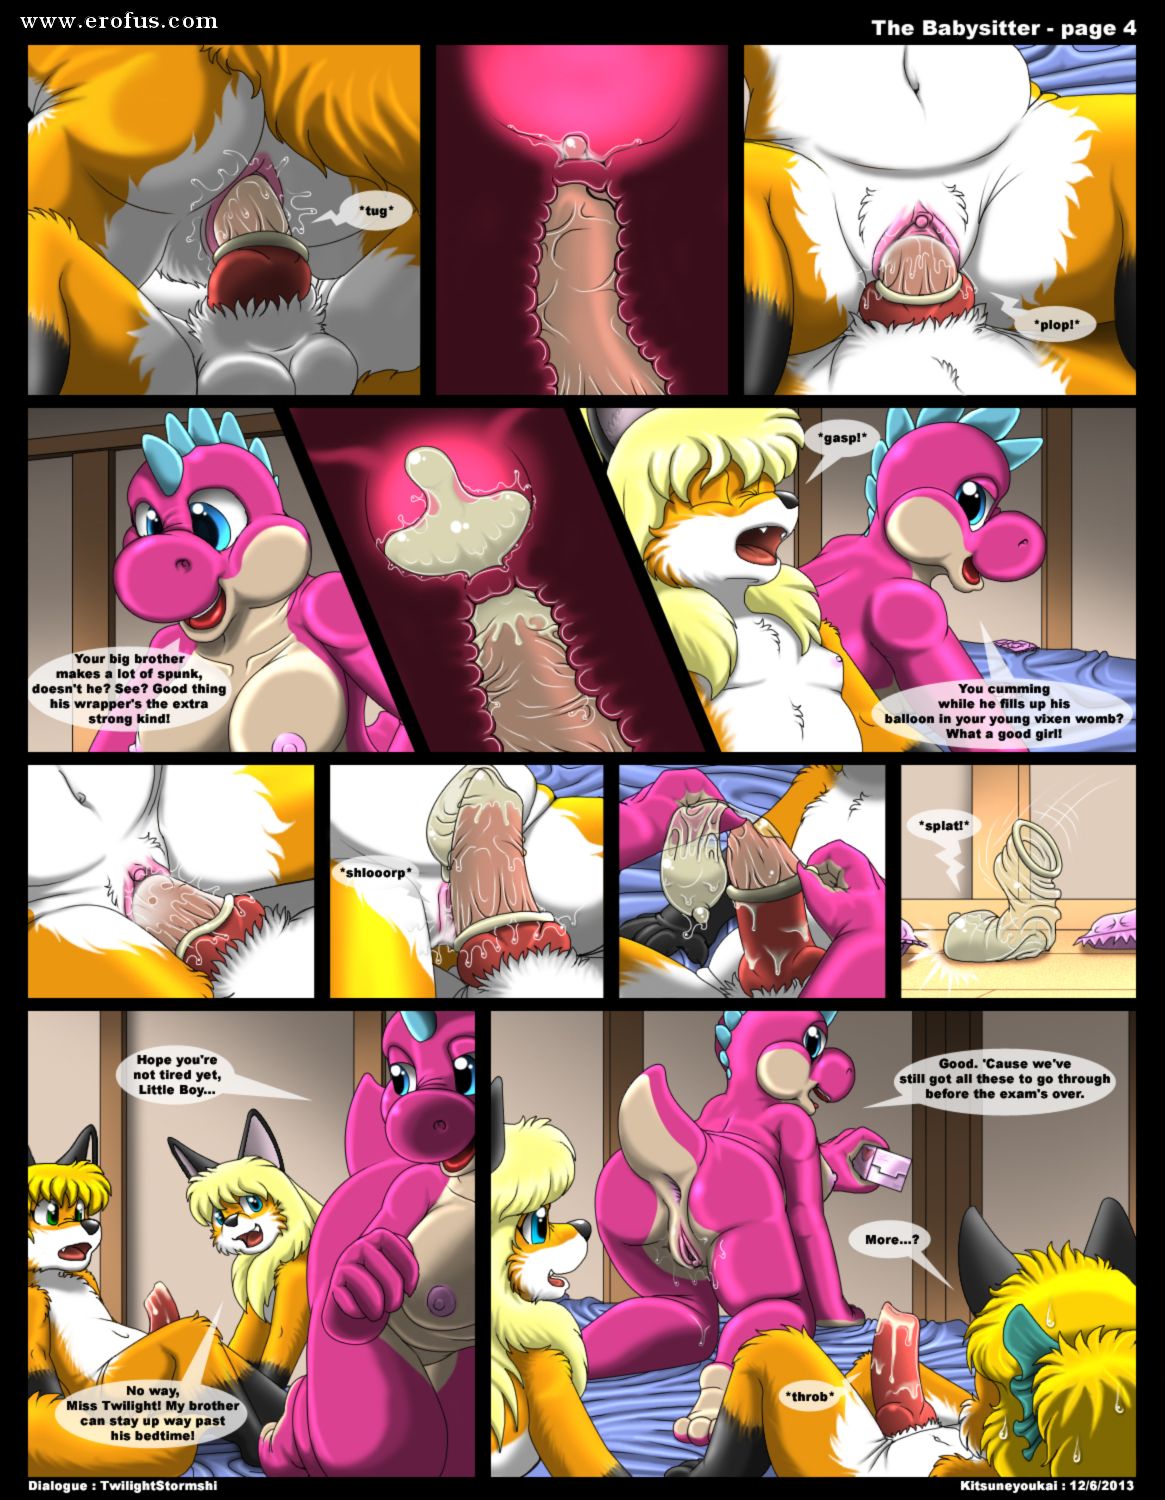 Babysitter Cartoon Porn Comics - Page 4 | various-authors/kitsune-youkai/furry-comics/the ...